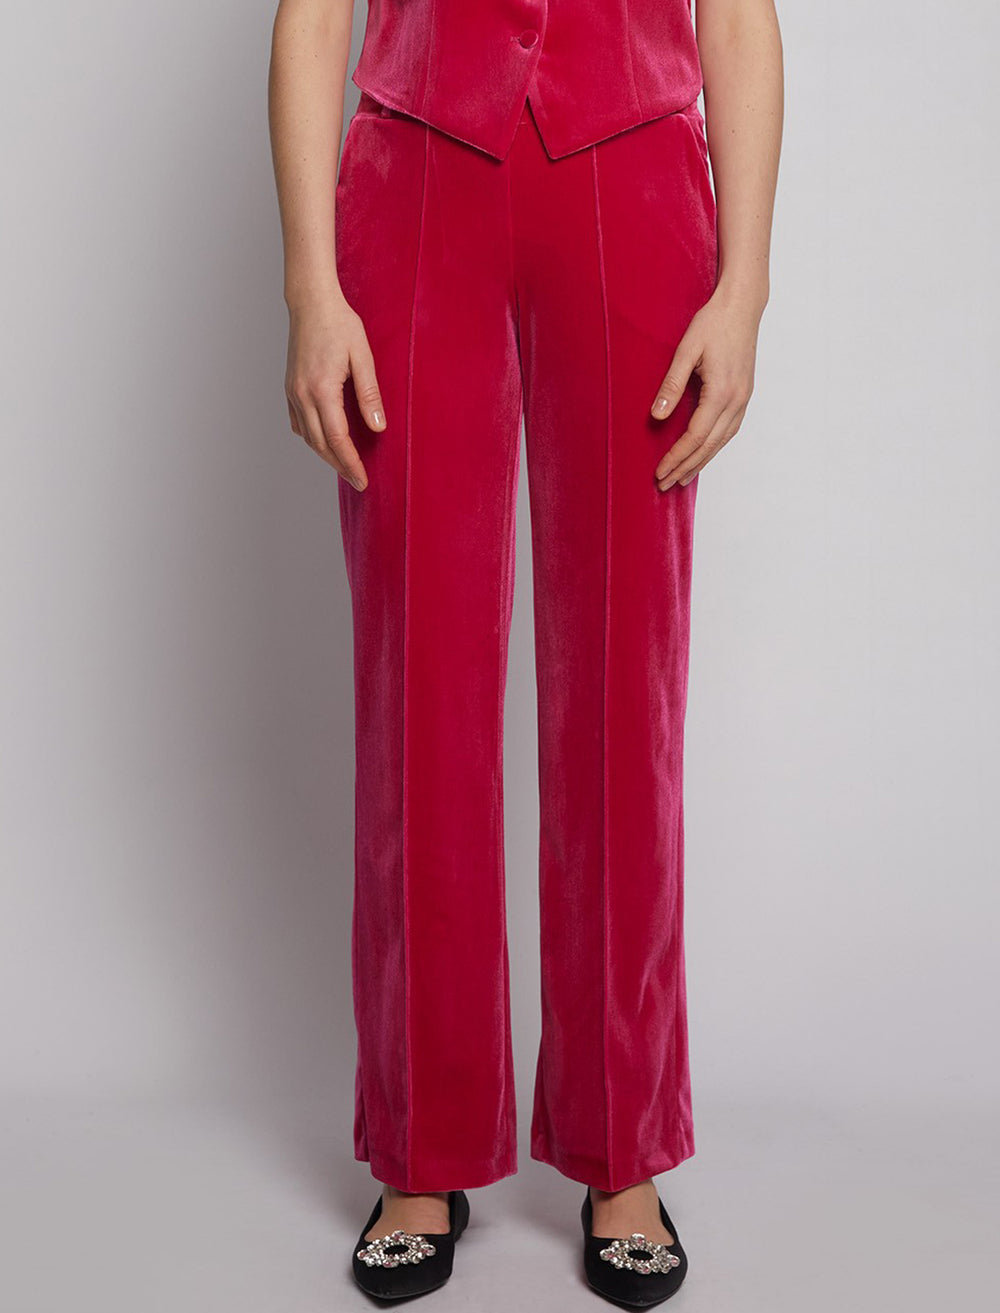 Model wearing Vilagallo's carla pink velvet pants.